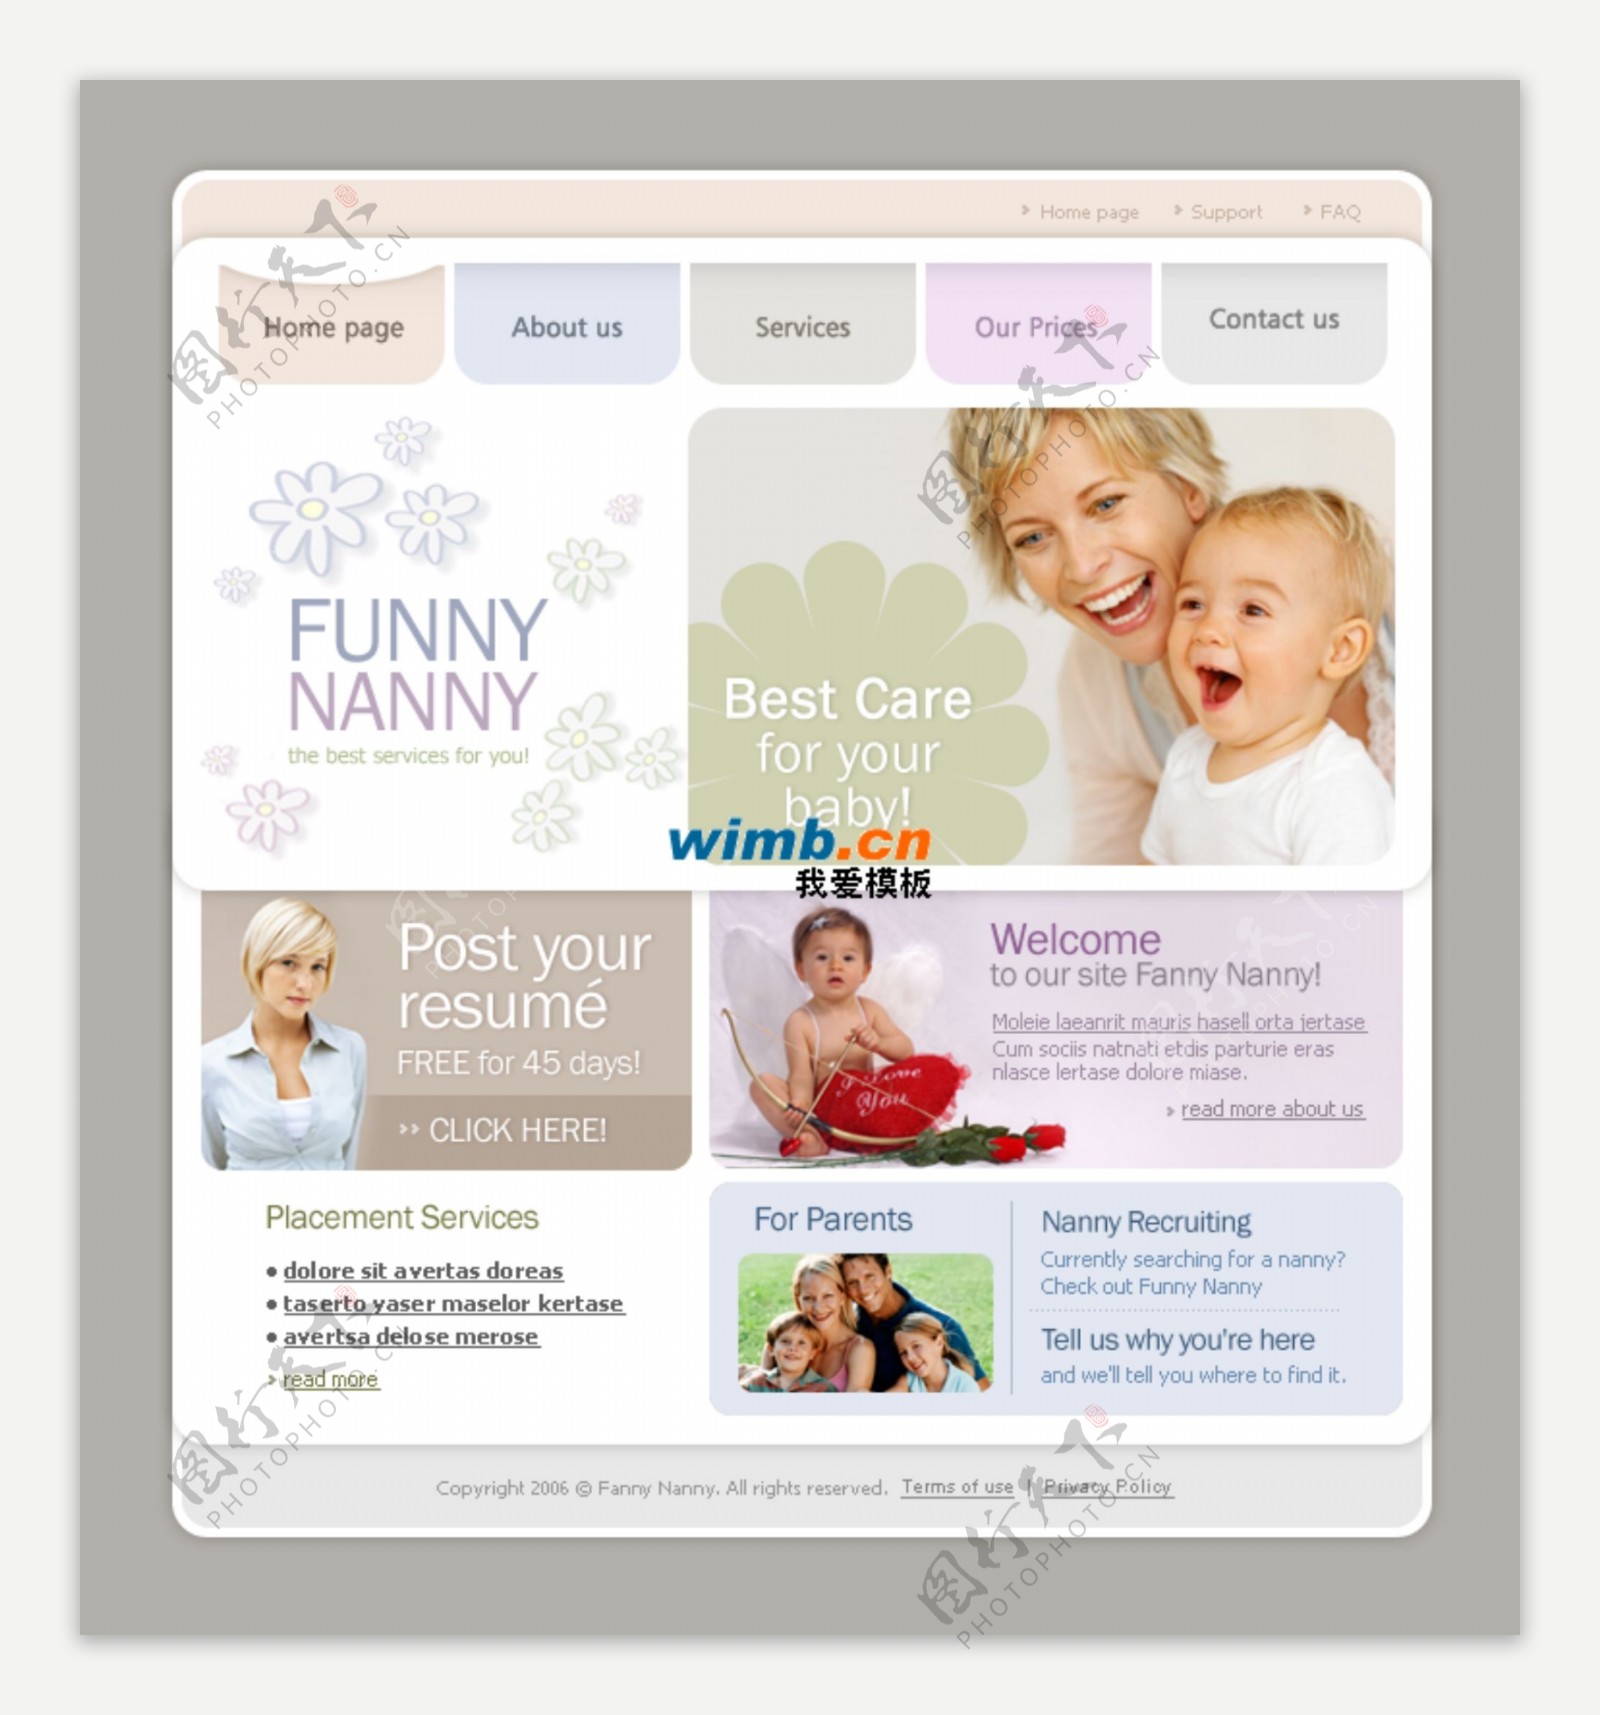 婴儿用品知识教育资讯网站